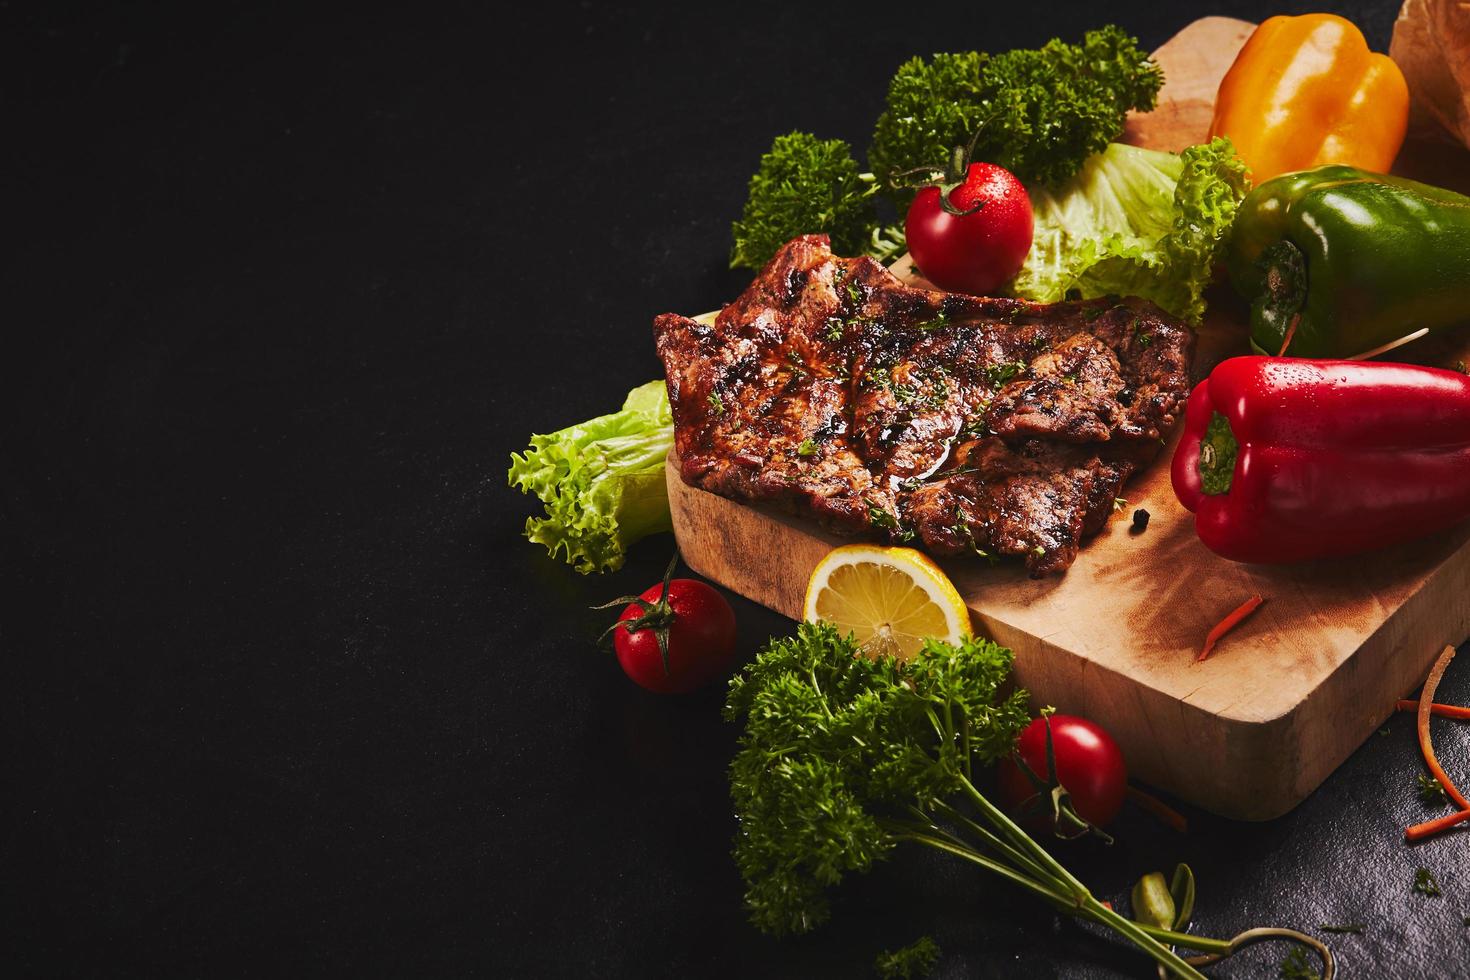 Steak and vegetables on dark background photo